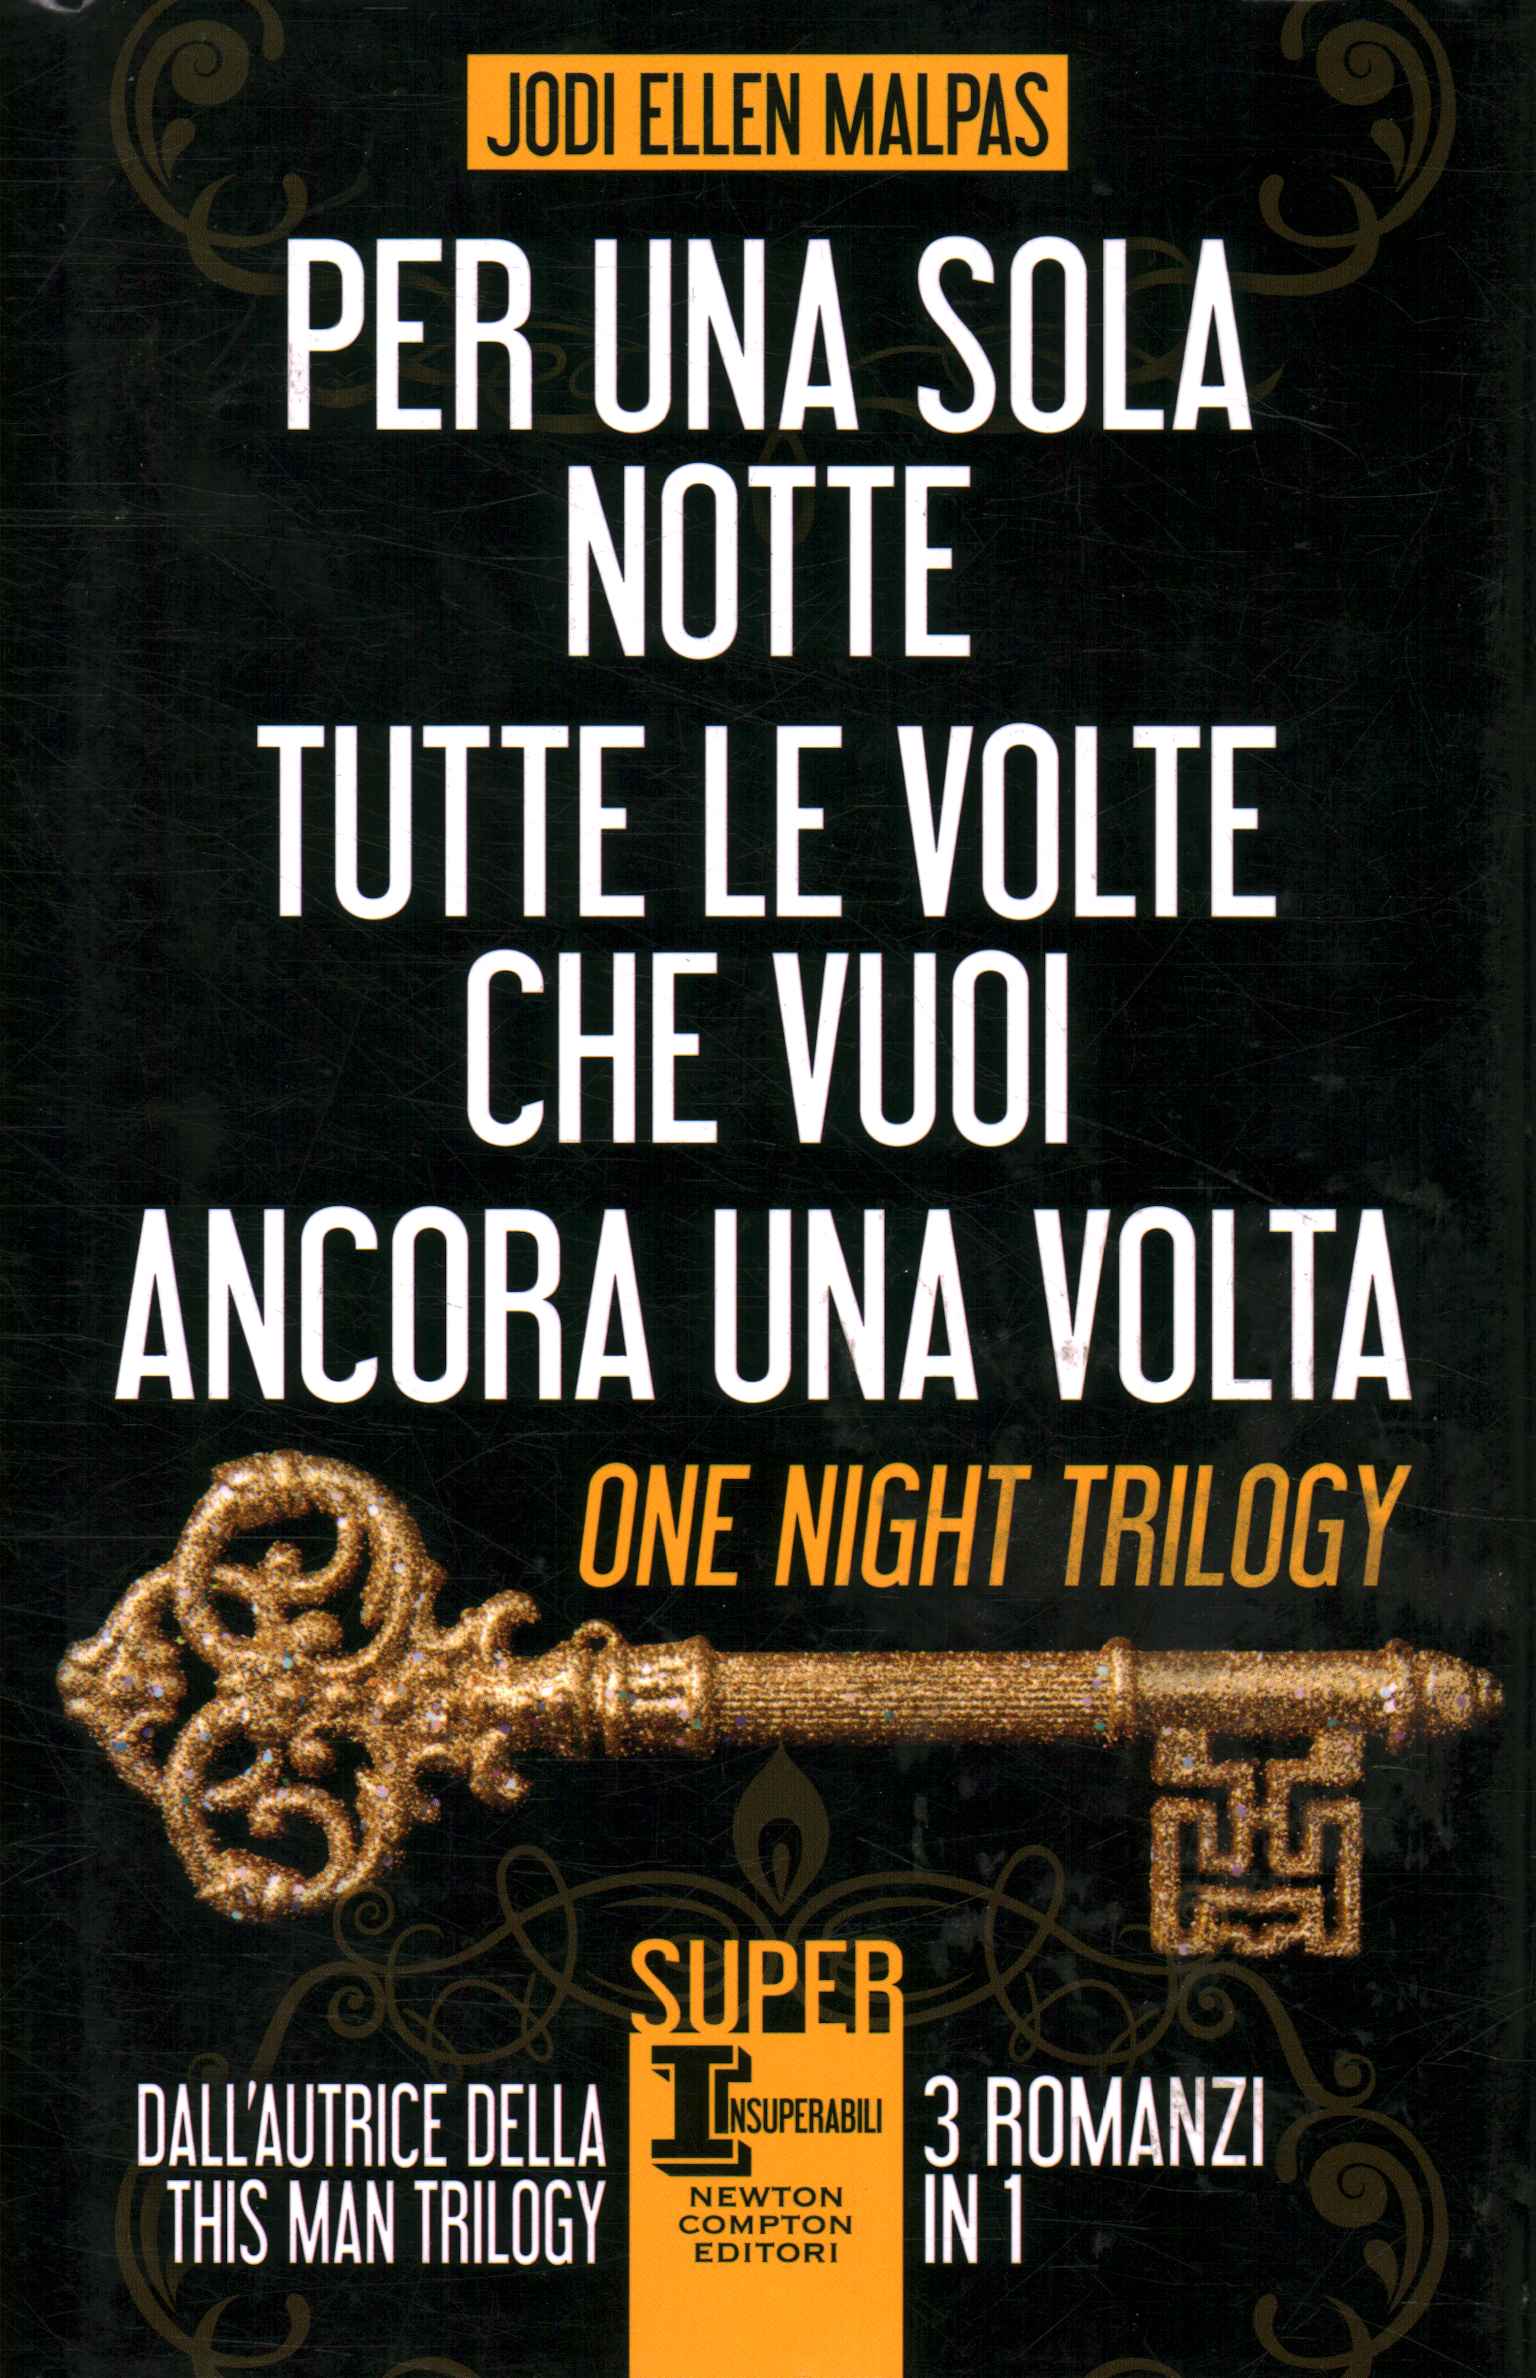 Trilogía de una noche